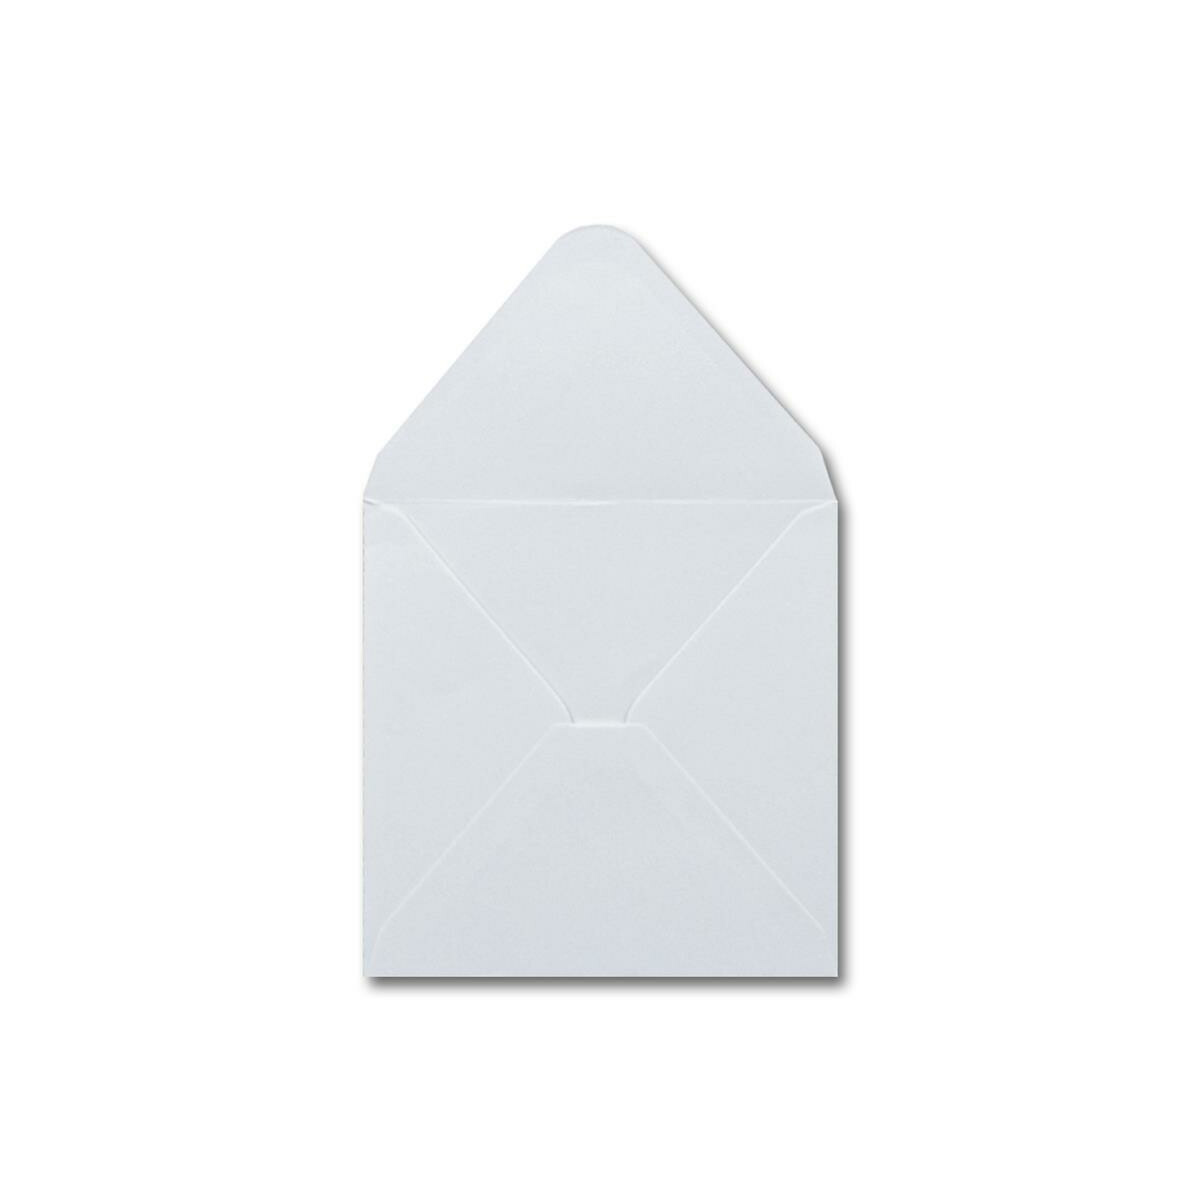 240 g/m² mit Brief-Umschlägen 14 x 14 cm 120 g/m² Spitzklappe Nassklebung 20 Falt-Karten Sets Quadratisch Creme-Weiß Doppel-Karte 13,5 x 13,5 cm 